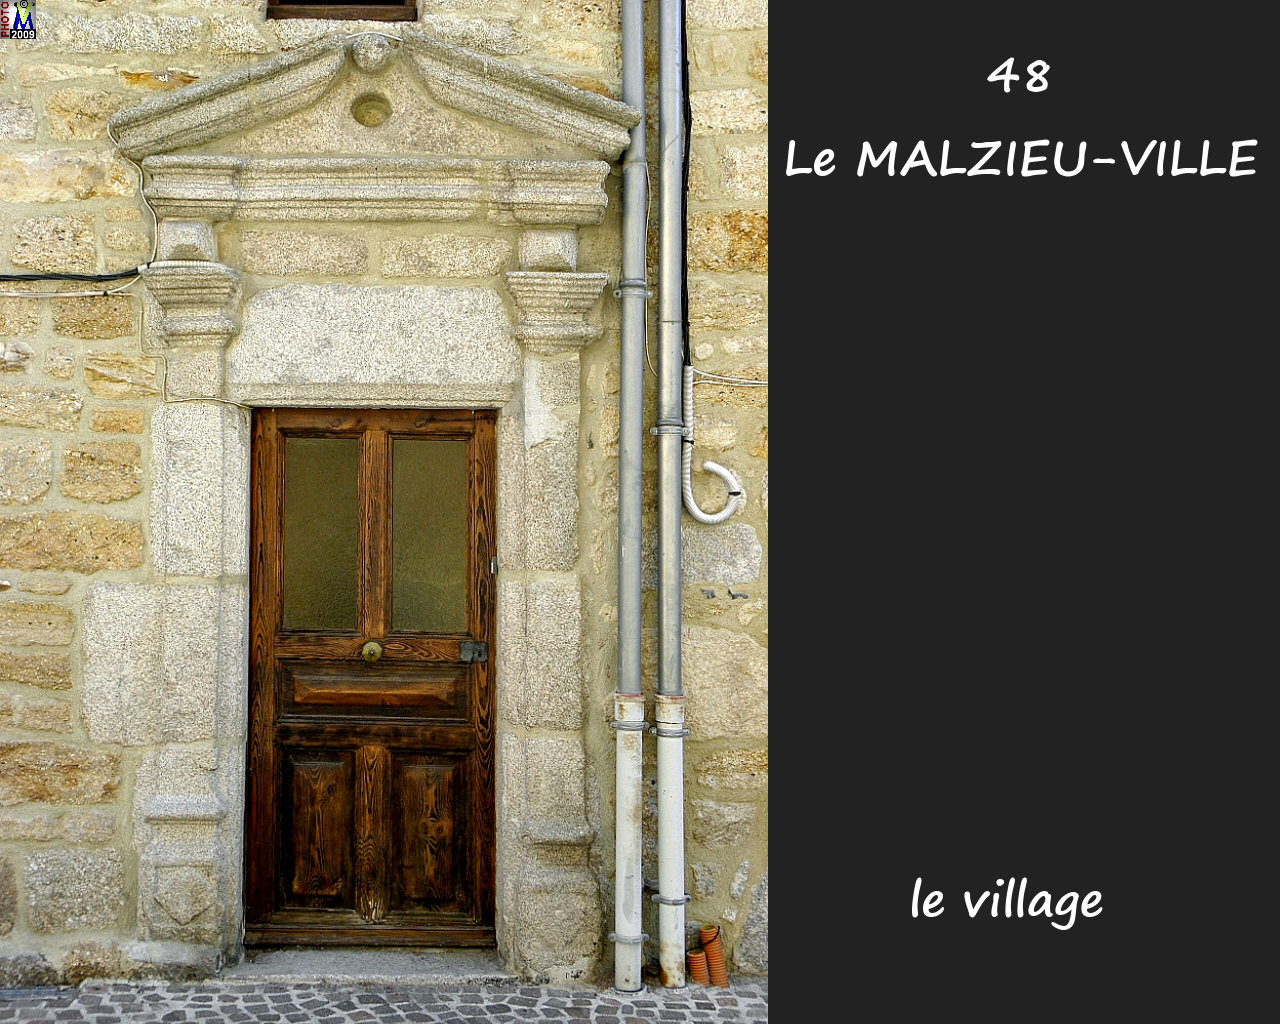 48MALZIEU-VILLE_village_206.jpg